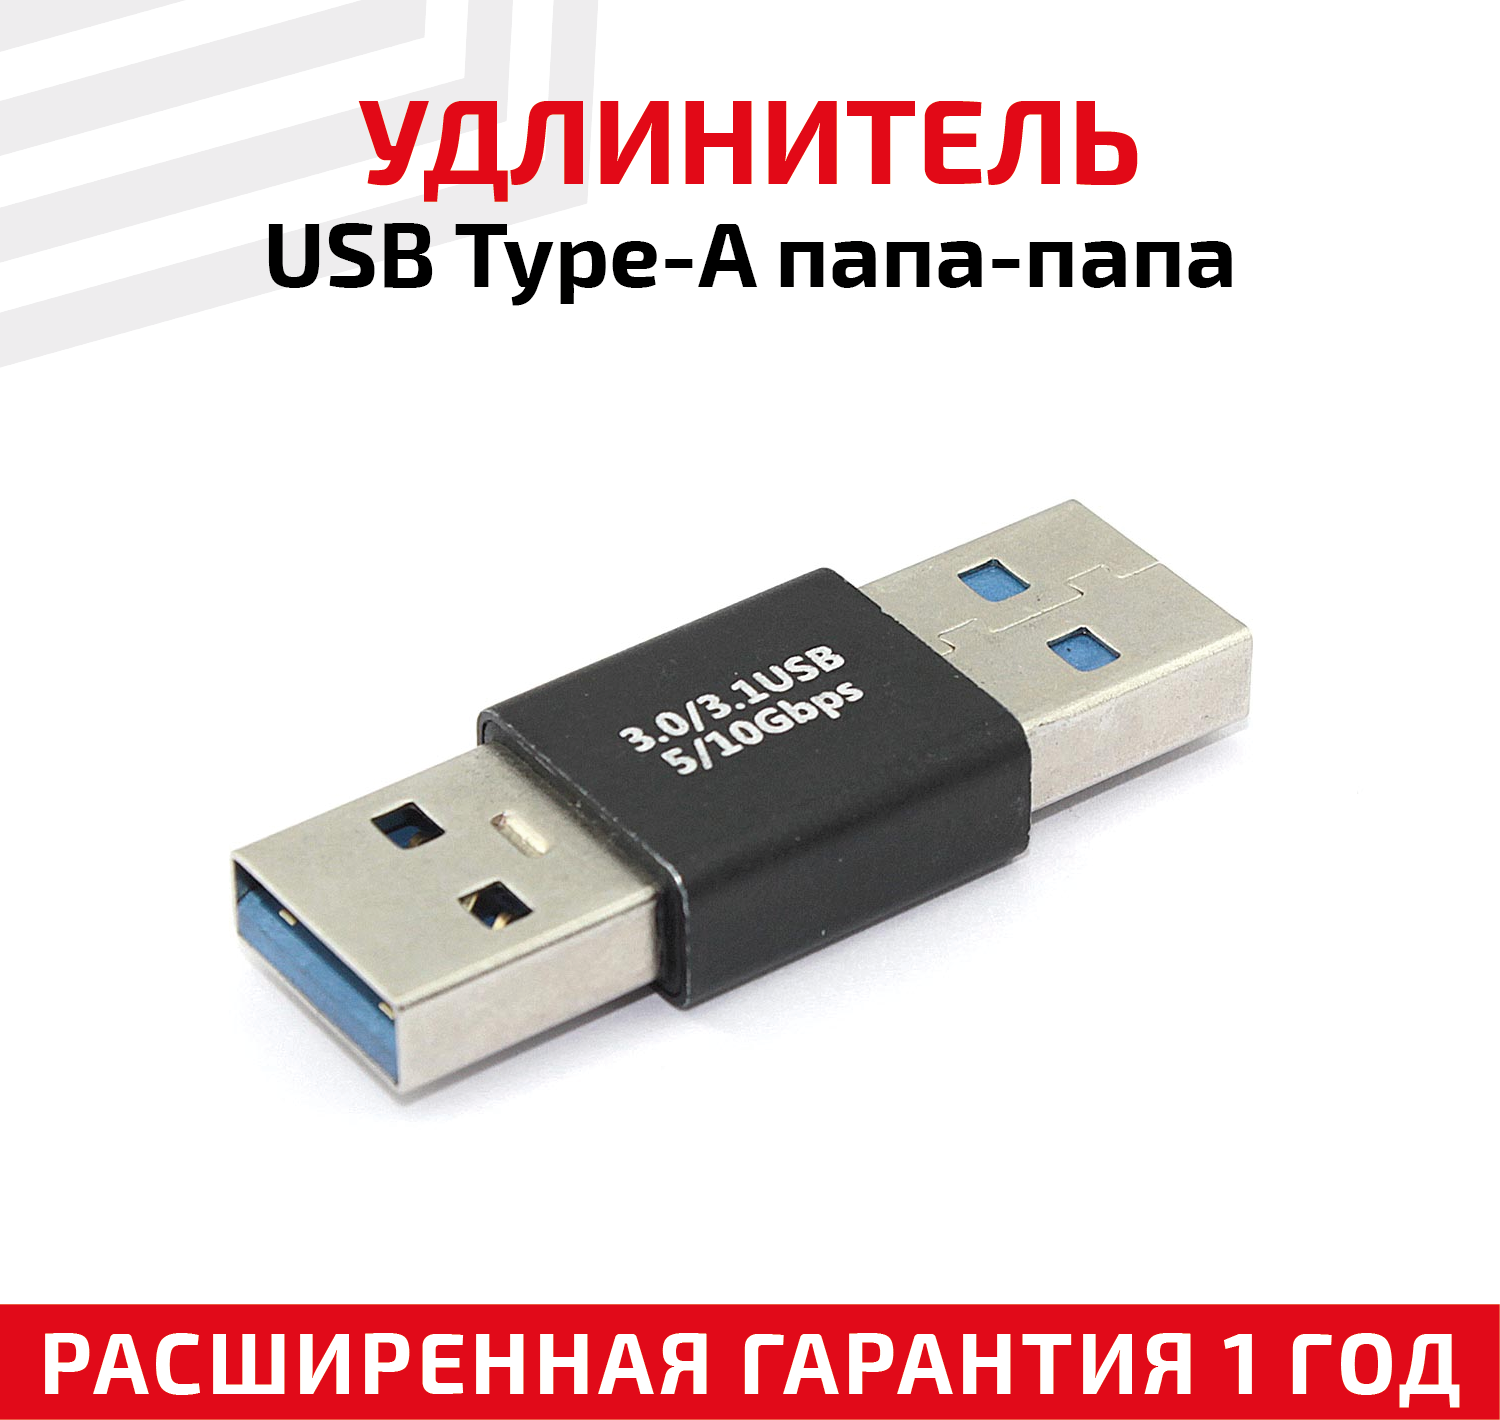 Прямой адаптер-переходник (коннектор, сетевой адаптер) USB 3.0 Type-A папа - папа для ноутбука, USB контроллера, мышки, джостика, клавиатуры